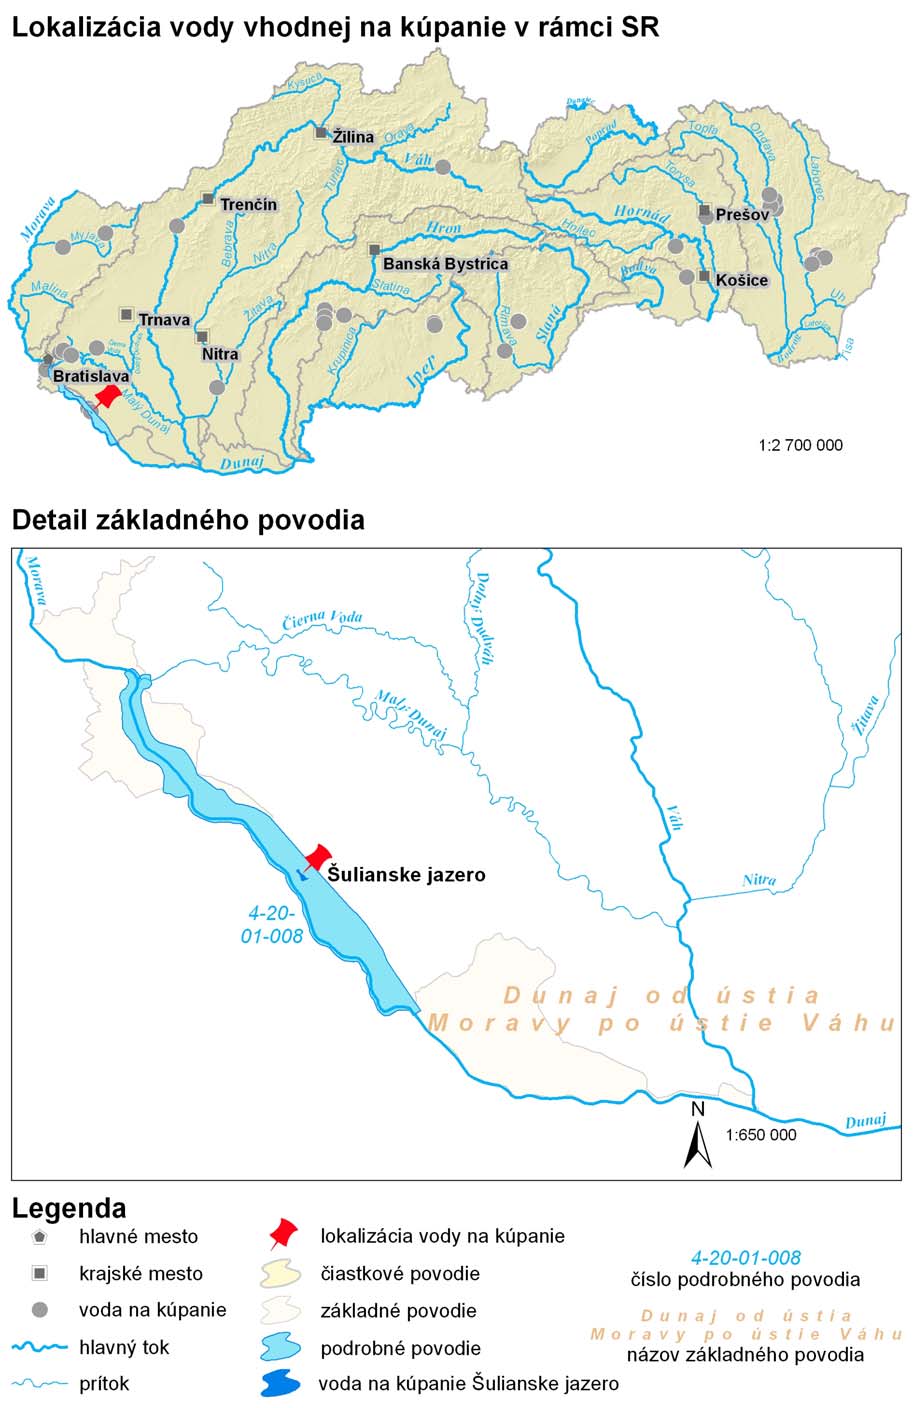 Mapa 1: Lokalizácia vody vhodnej